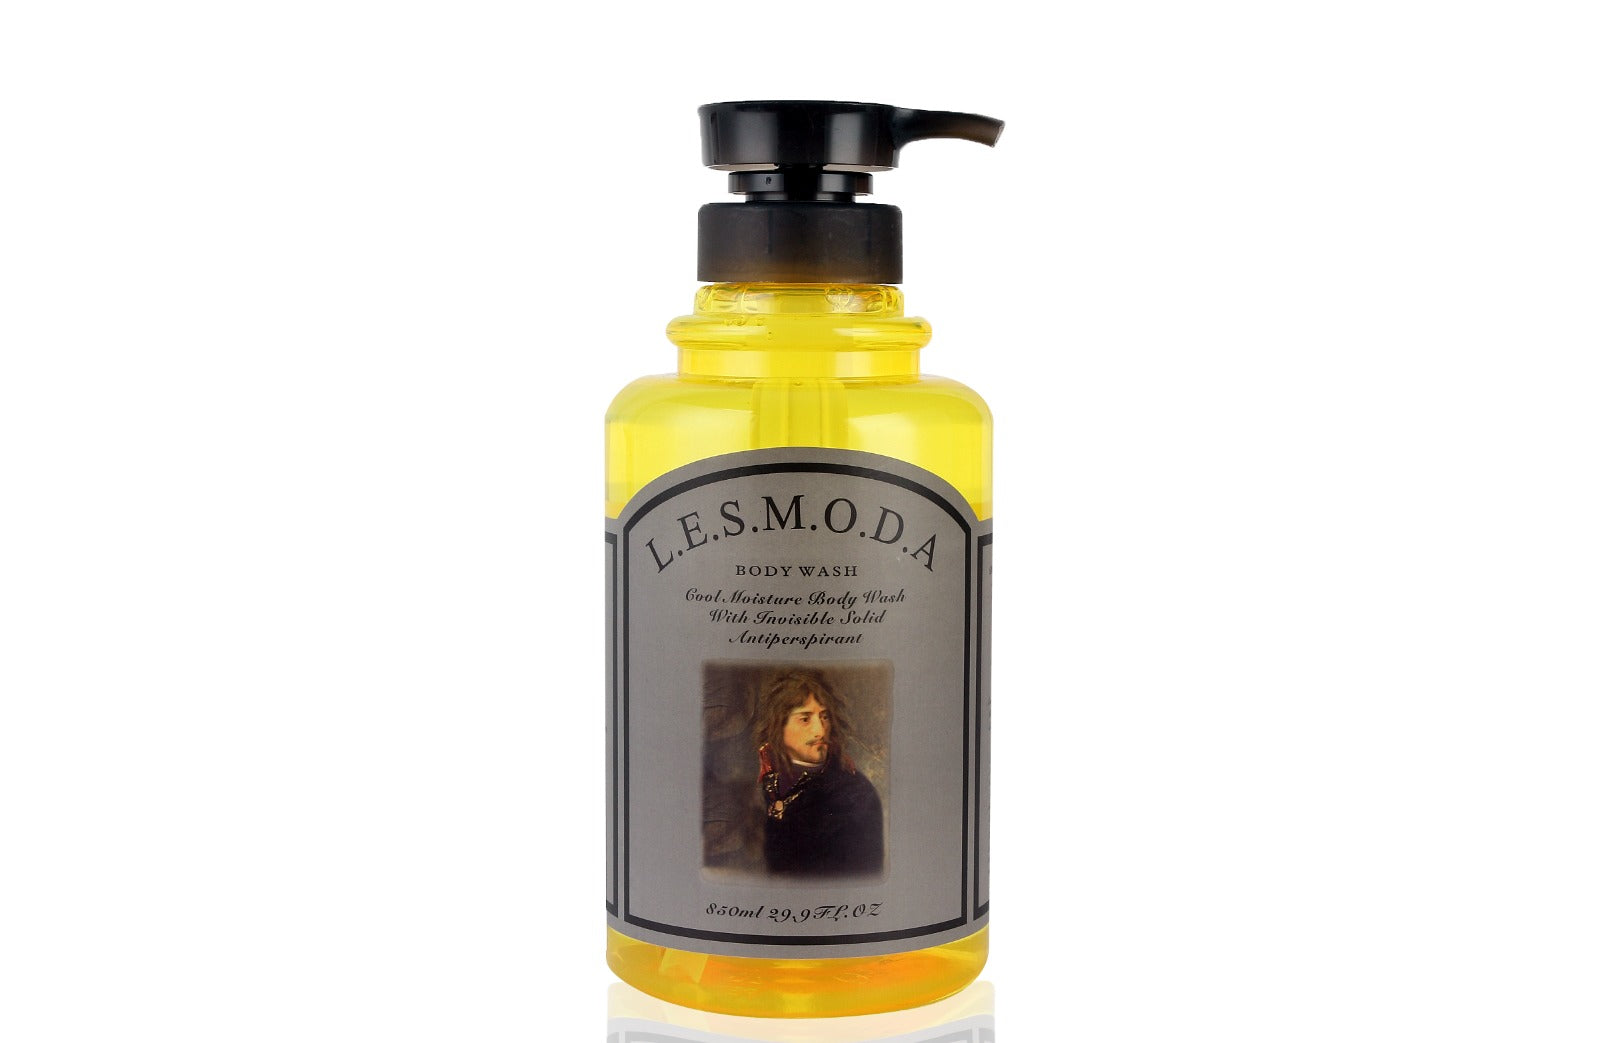 Lesmoda body wash (Antiperspirant)